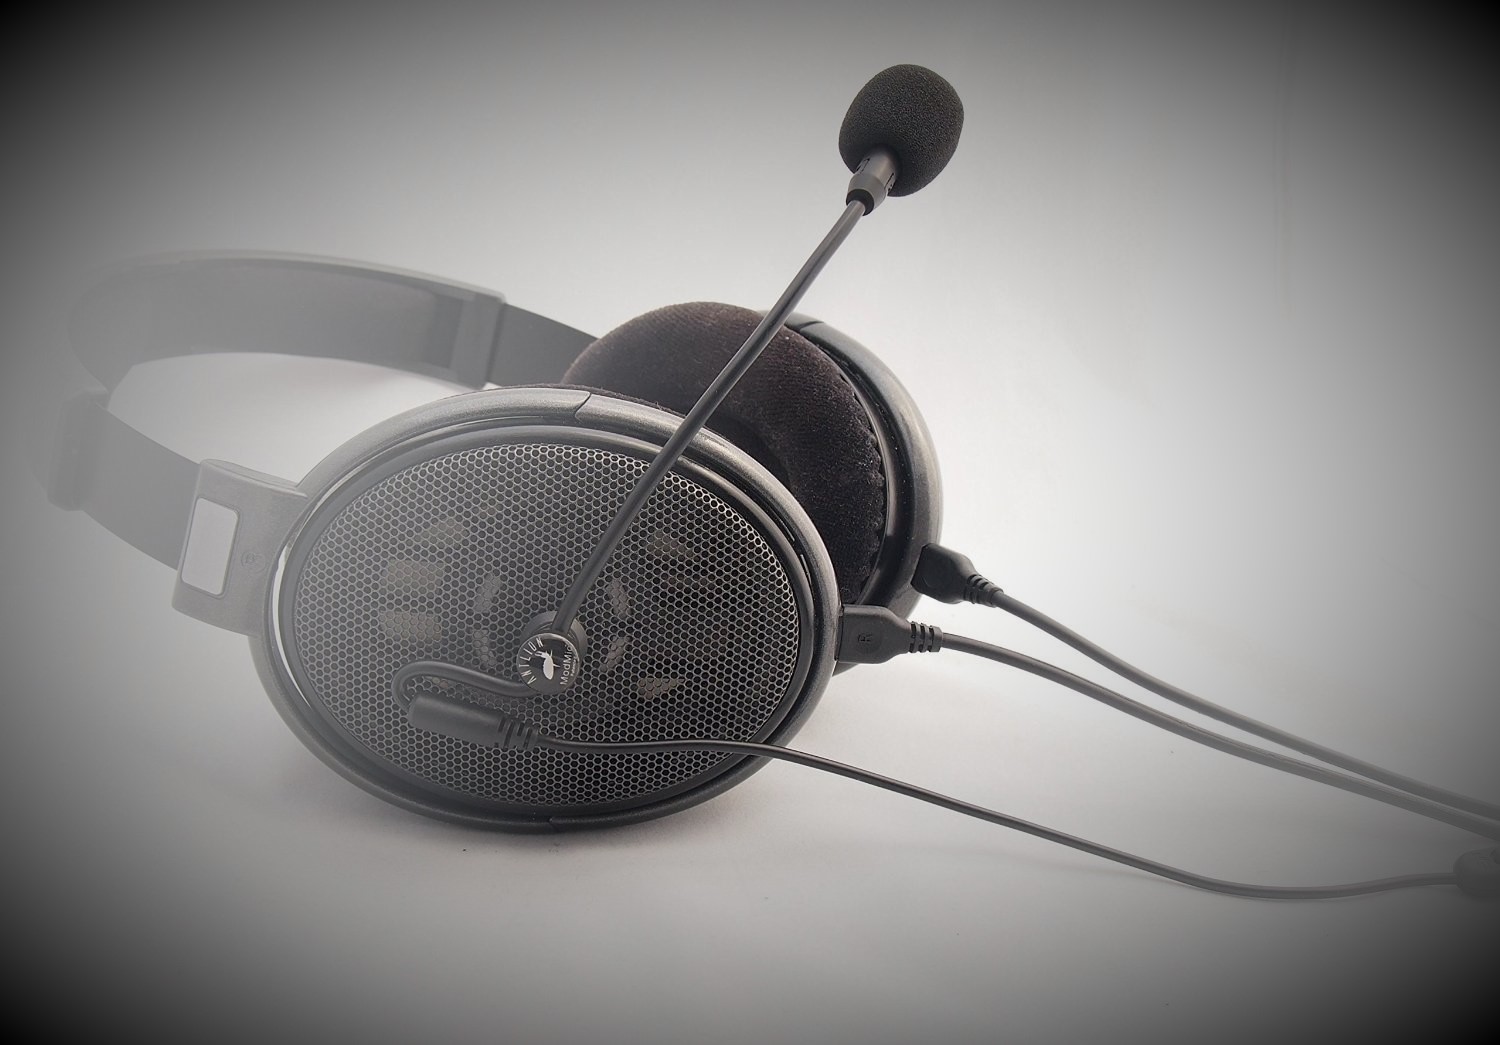 Kopfhörer und Mikrofon: Bessere Alternative zum Headset?